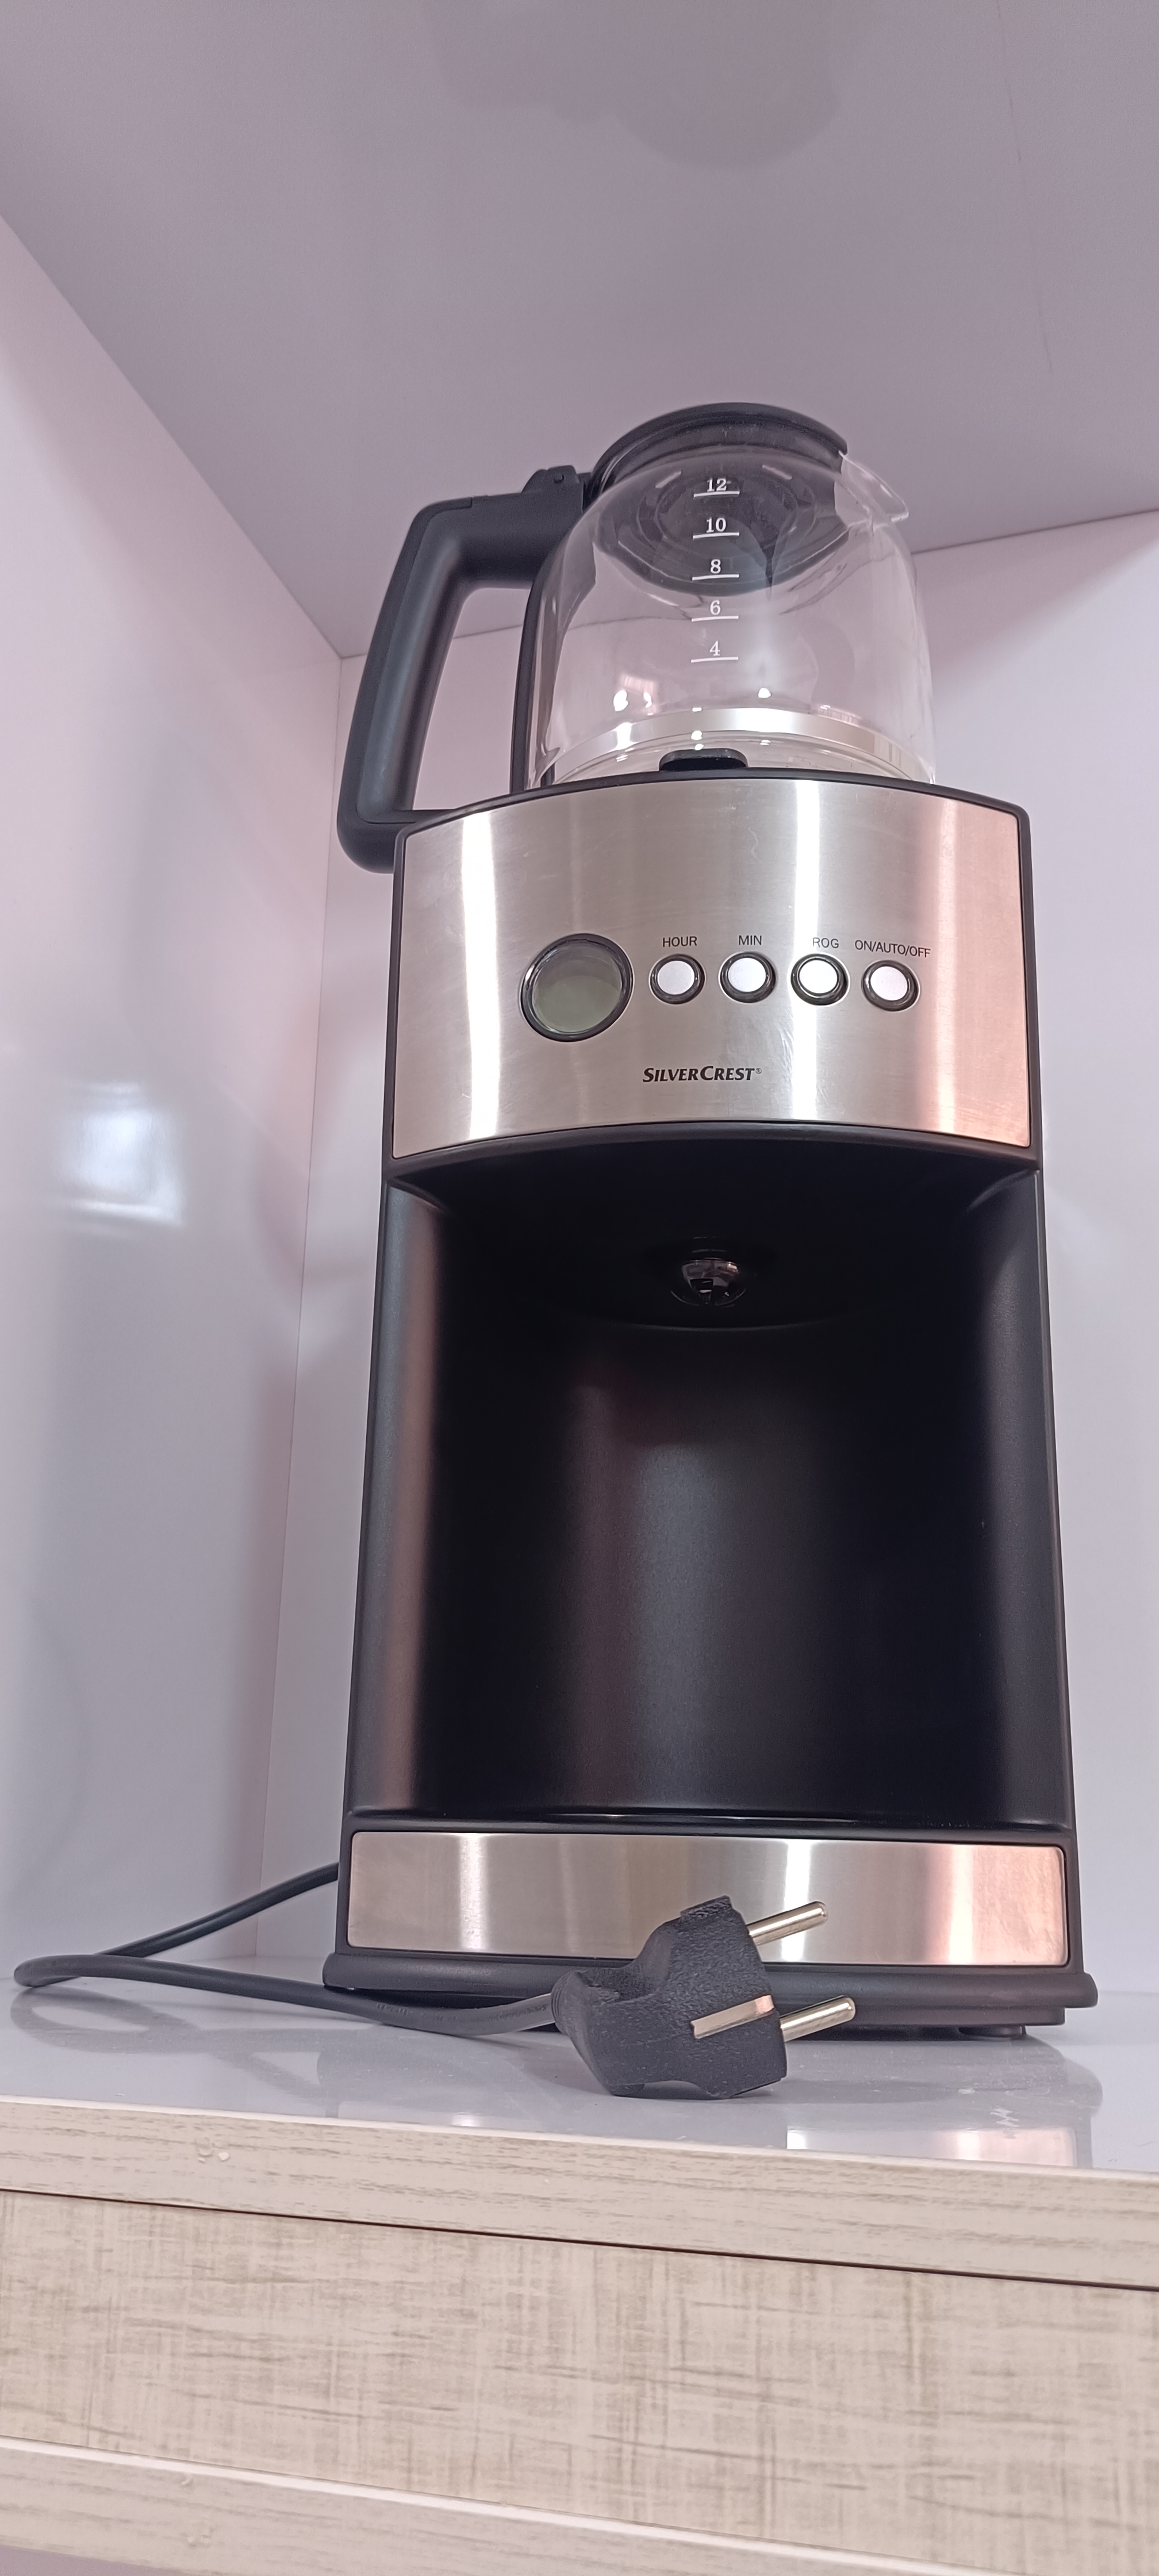 قهوه و چای ساز سیلور کرست مدل SKAT1000